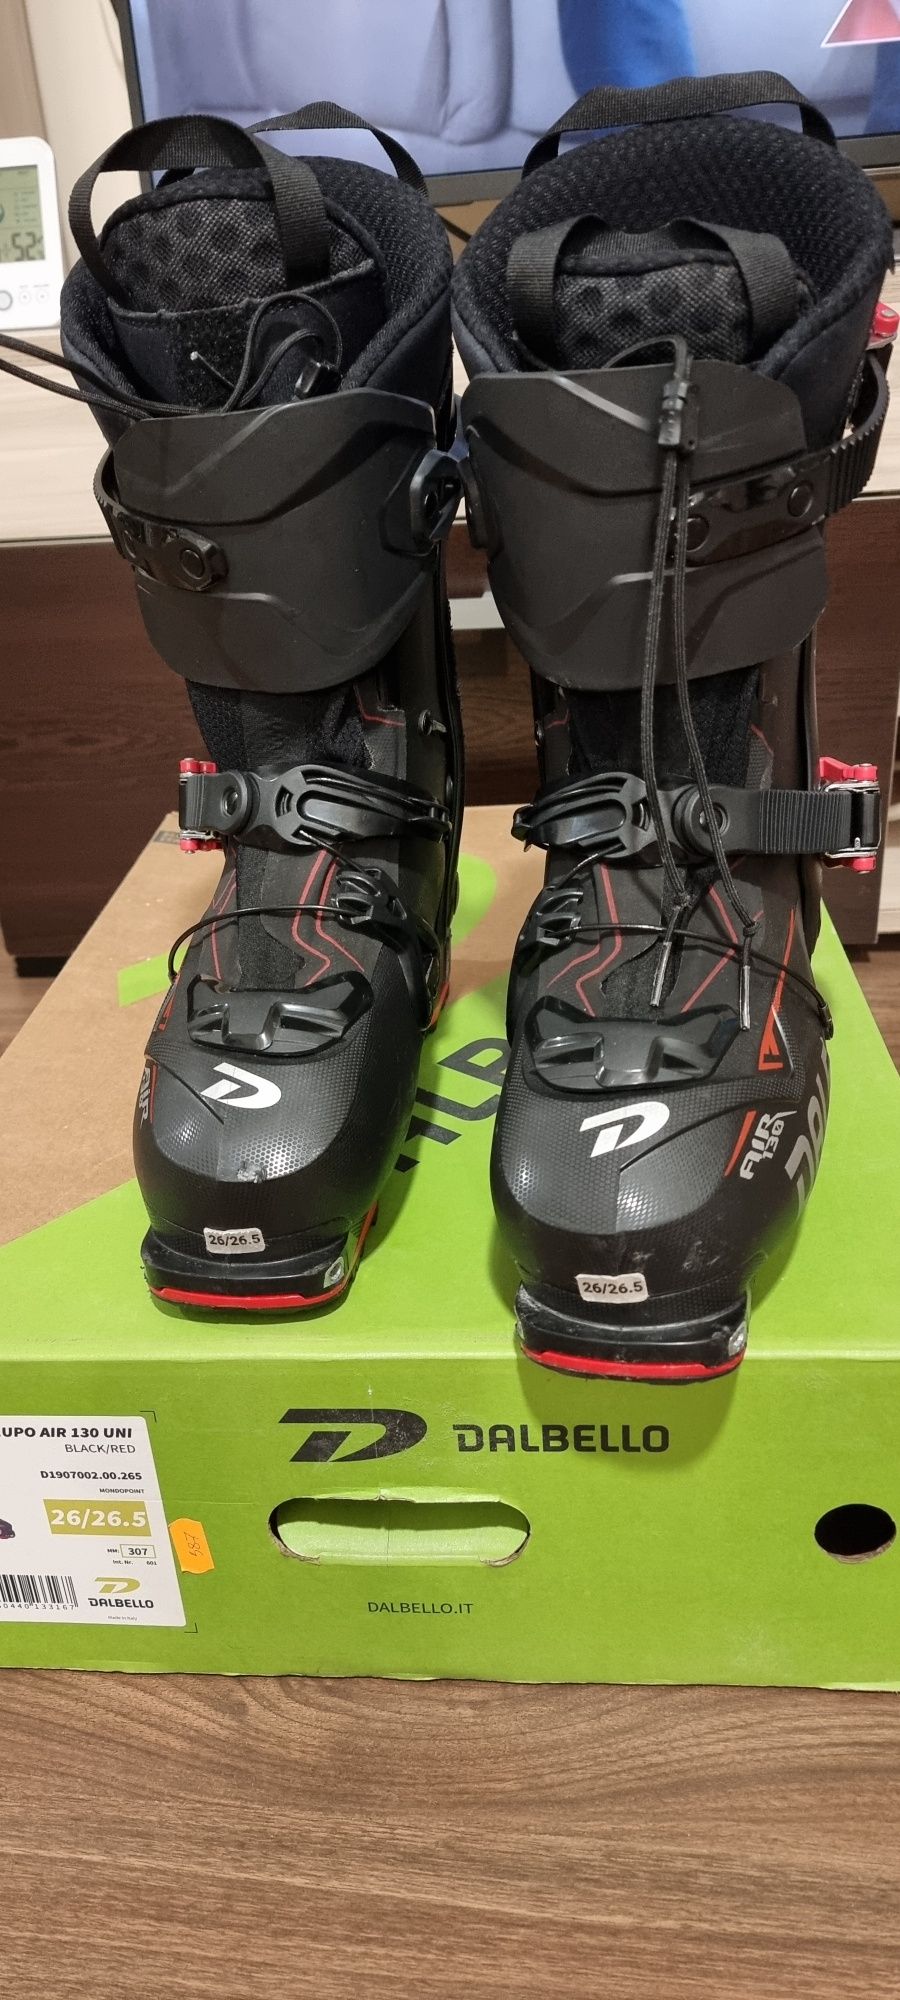 Ски туринг обувки DALBELLO LUPO AIR 130 UNI